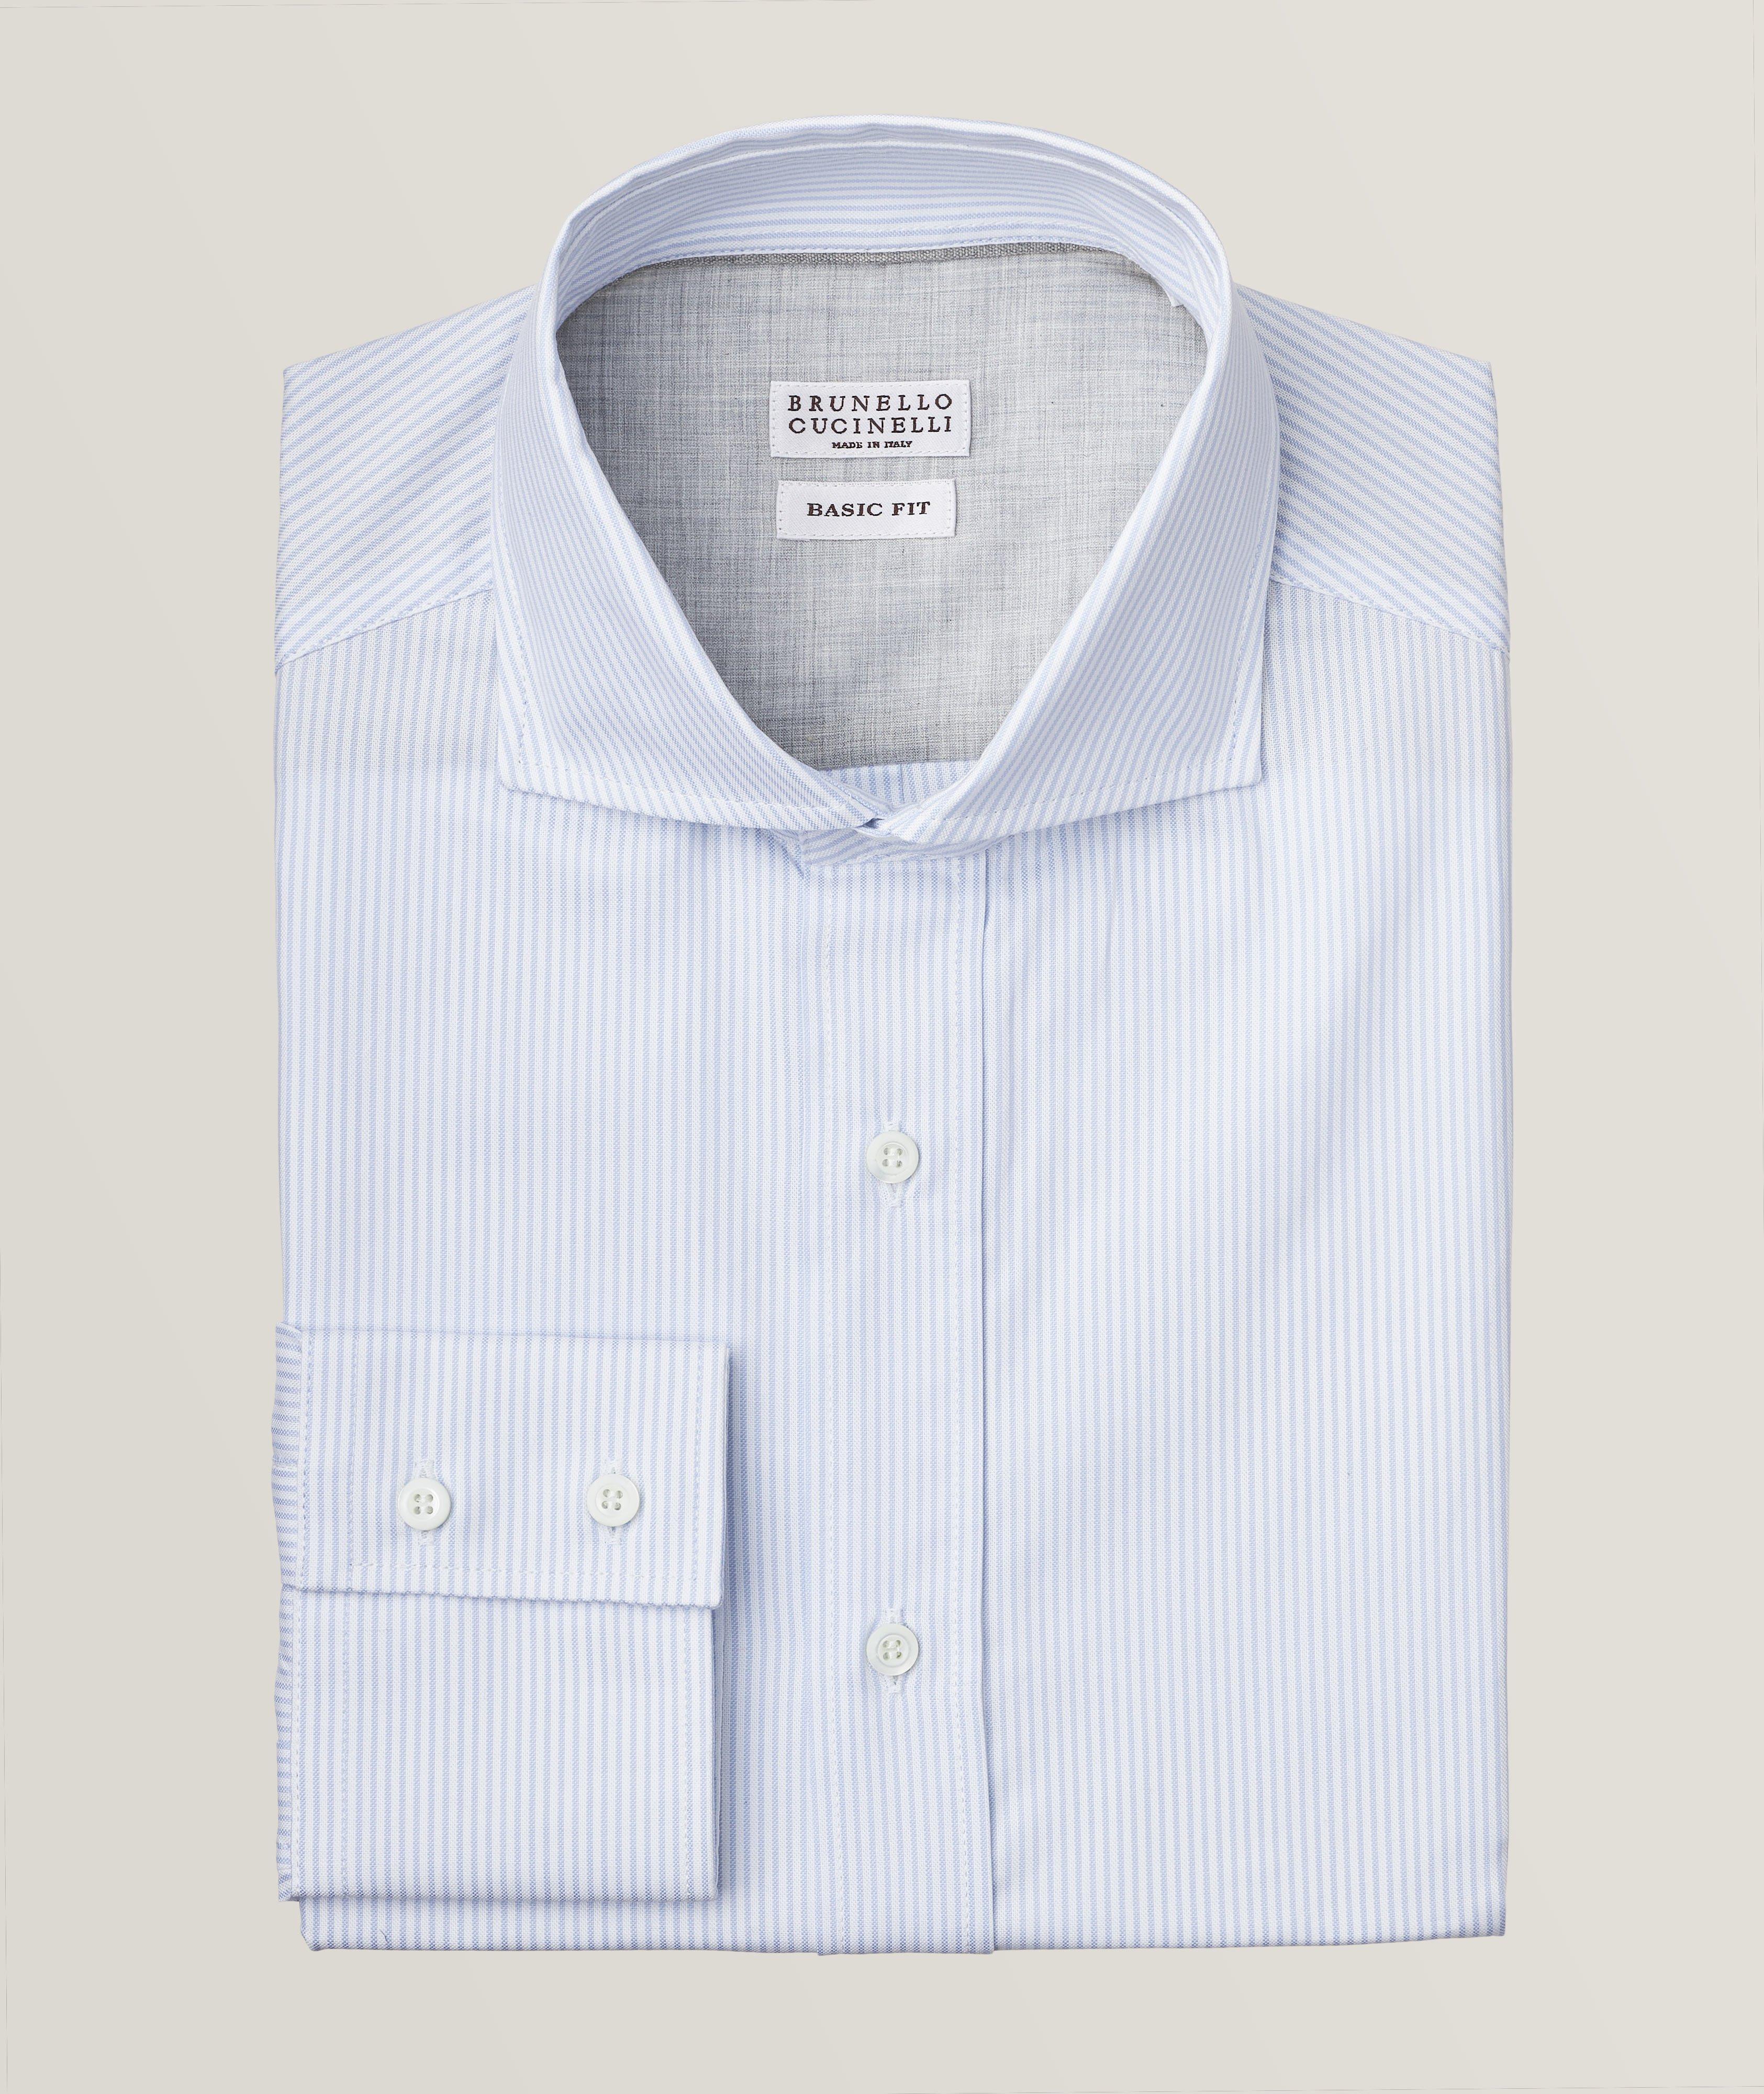 Brunello Cucinelli Pinstripe Cotton Oxford Shirt